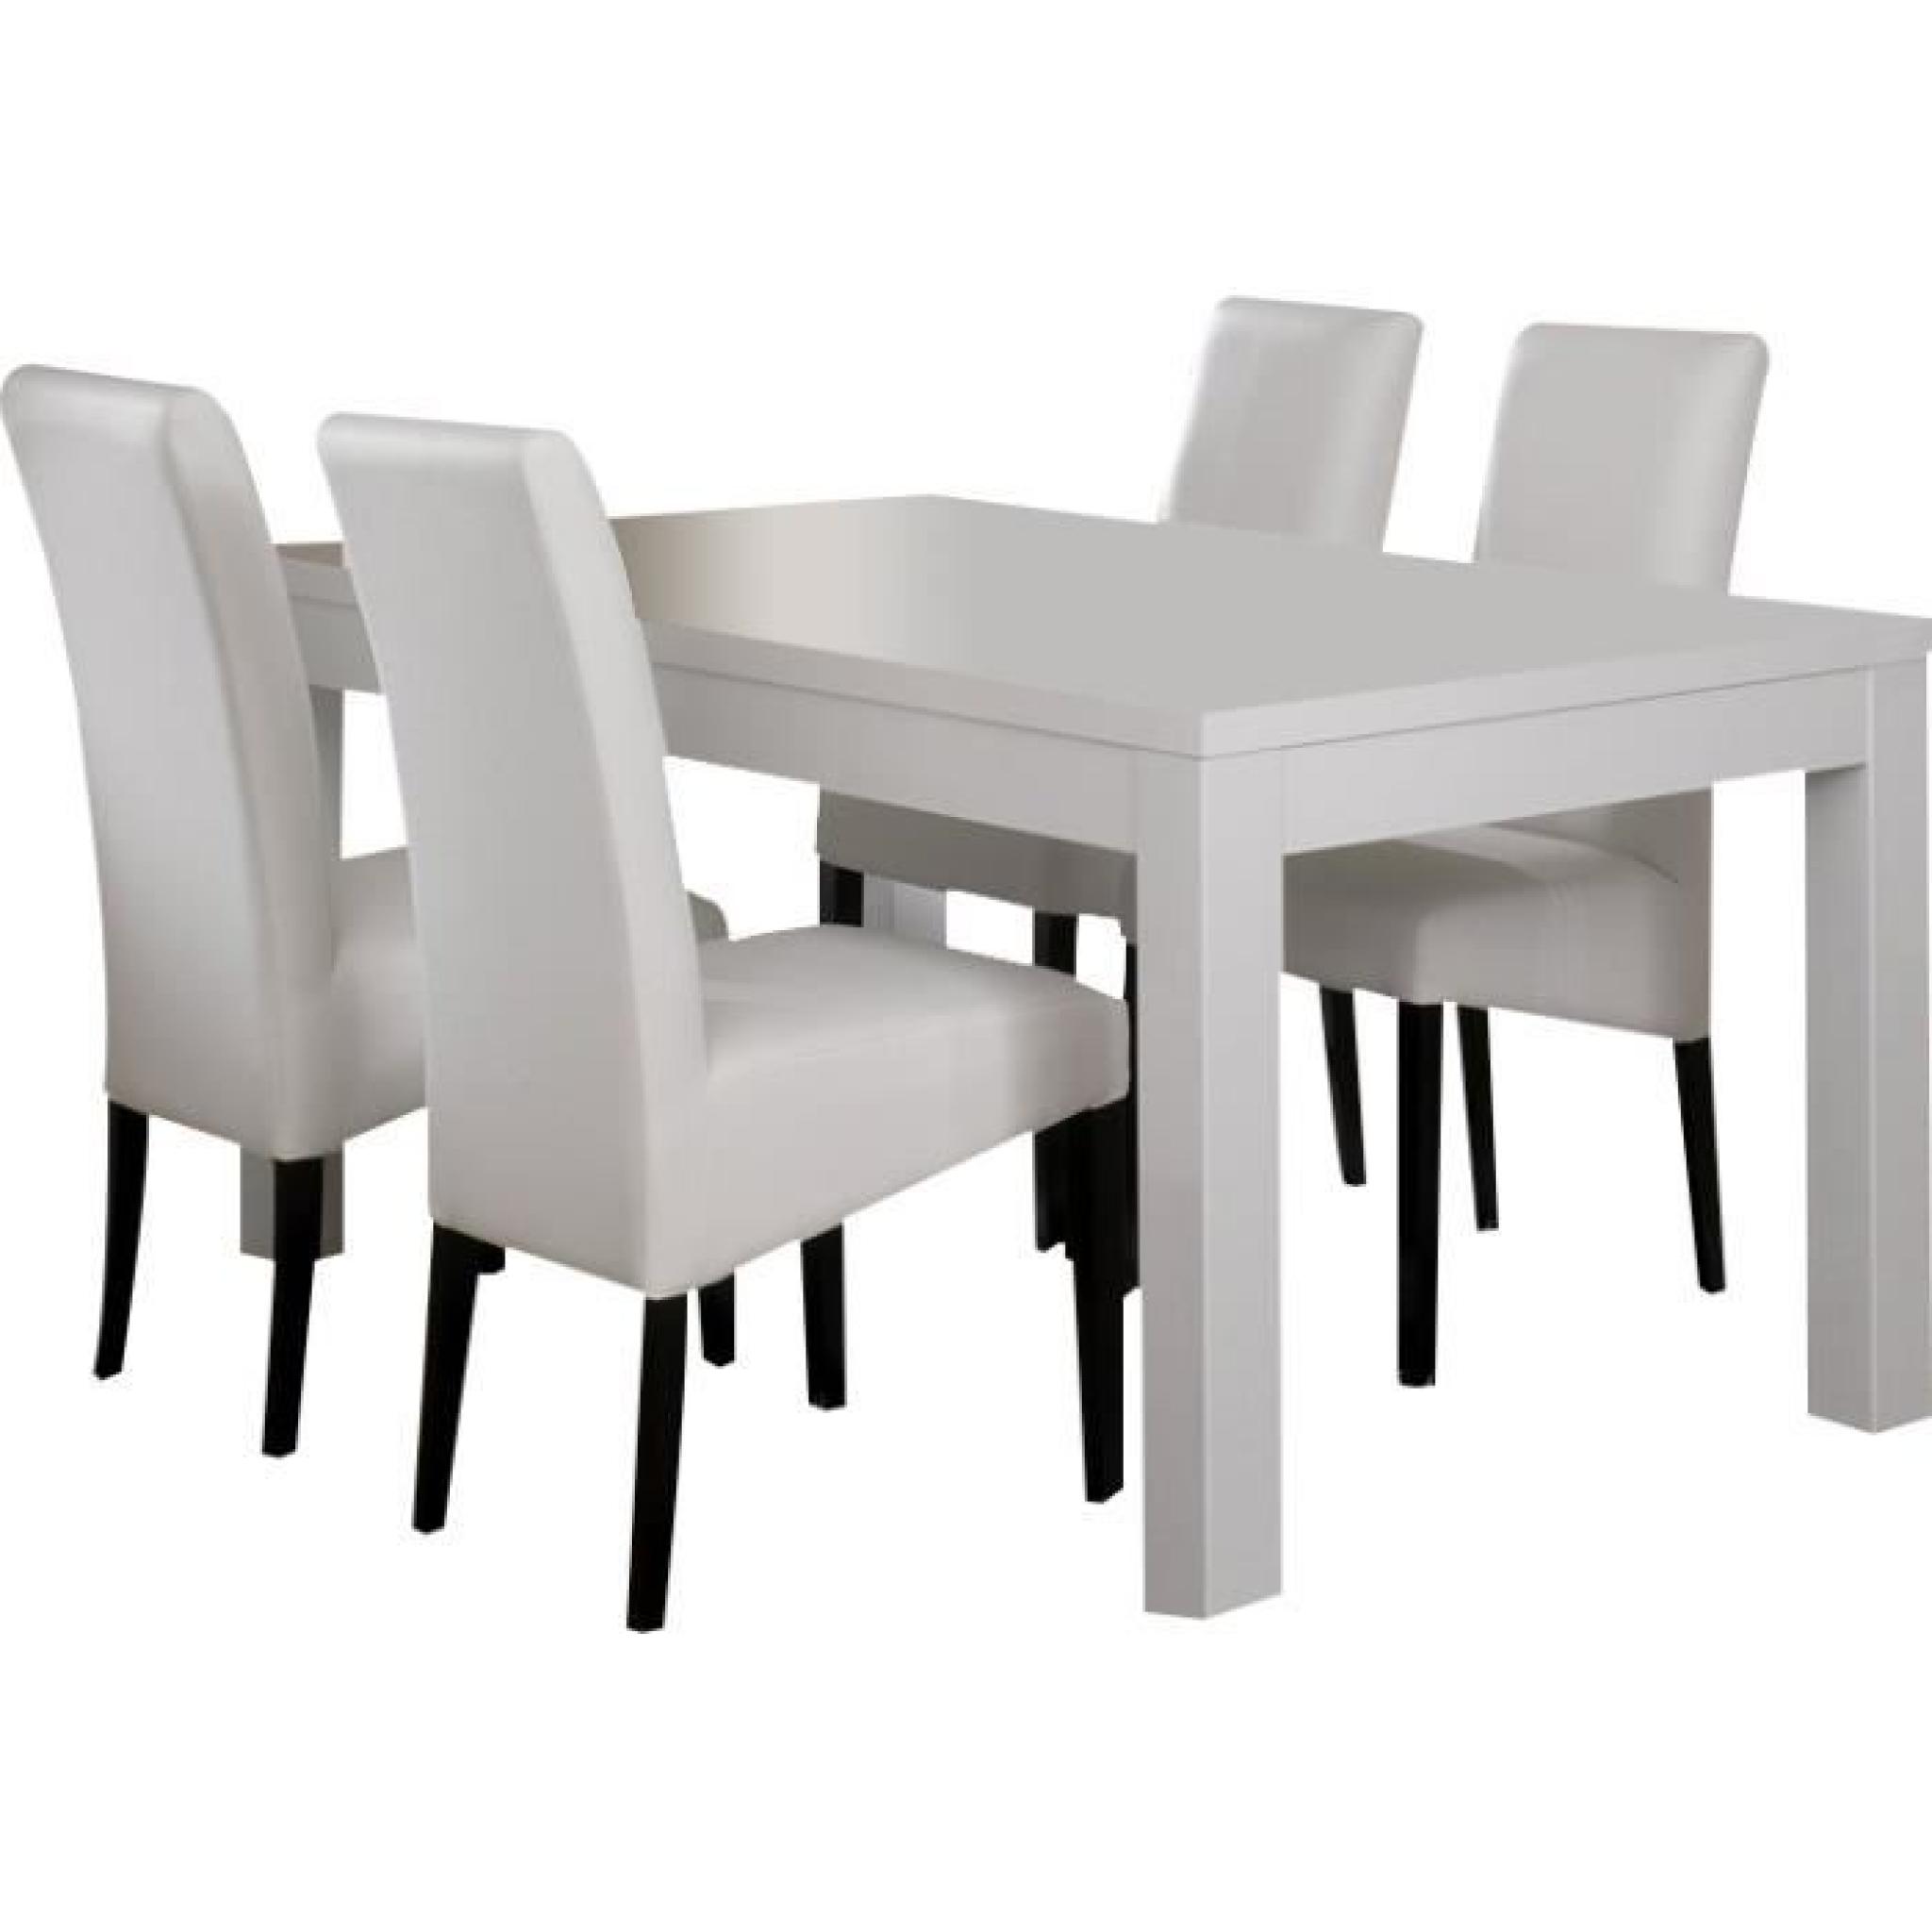 Table 190 cm blanc + 4 chaises coloris blanc et noir